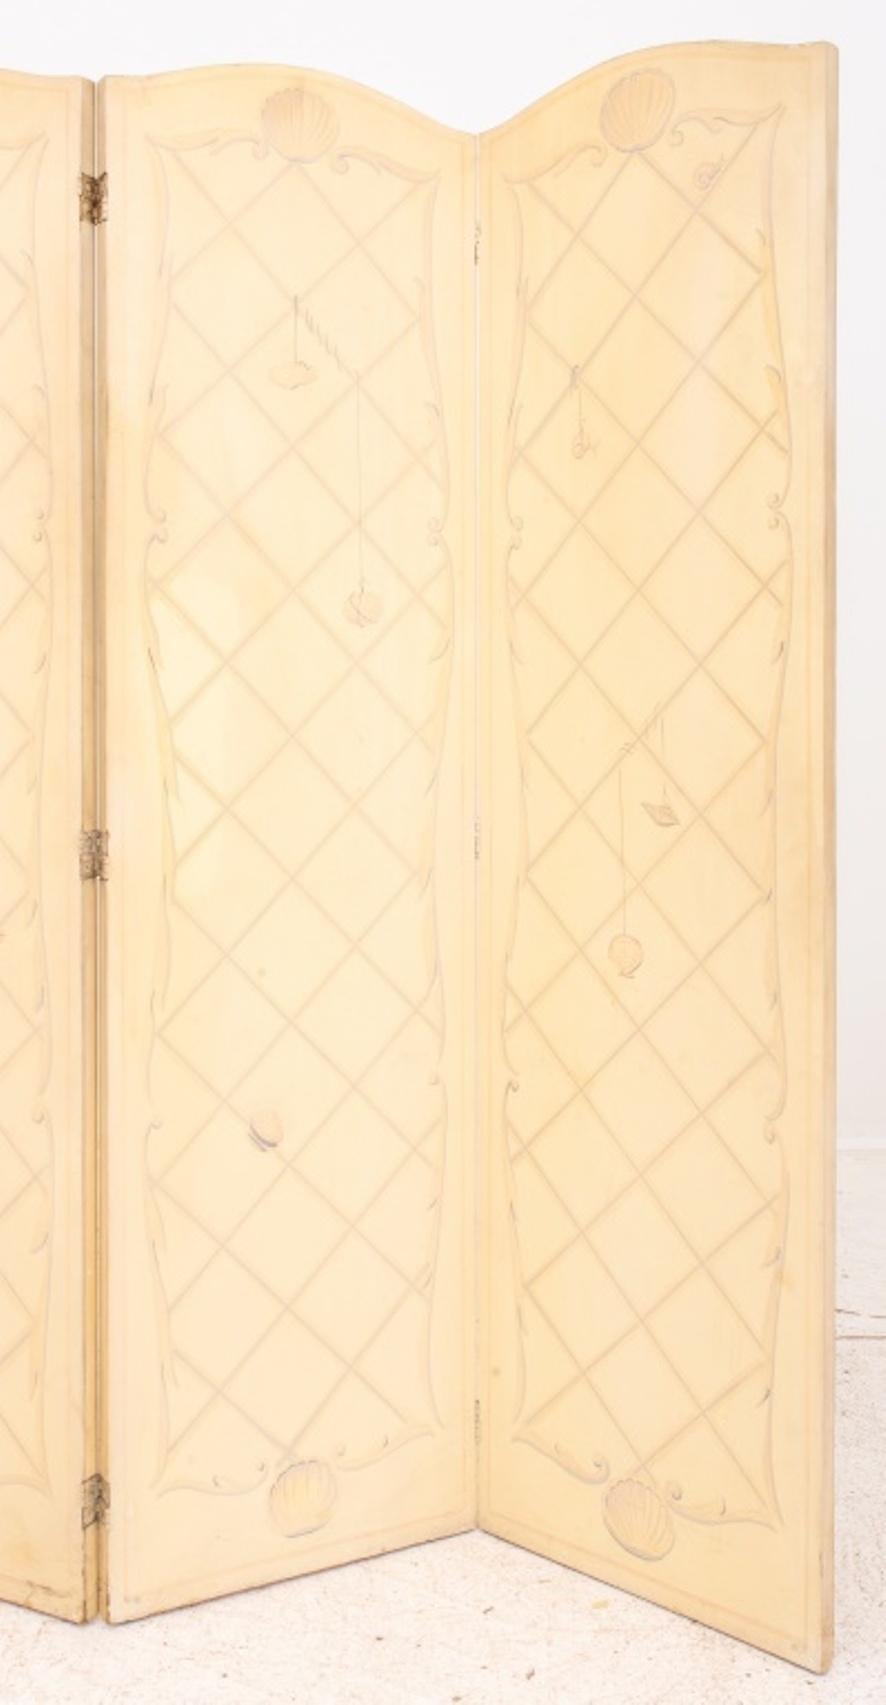 Louis XVI Manier trompe l'oeil faux architektonischen vier Panel-Bildschirm, die jeweils im Stil von Holzverkleidungen oder Boiserien gemalt. Bemerkenswerte Flecken auf einigen Platten, aber in gutem strukturellen Vintage-Zustand. Alters- und